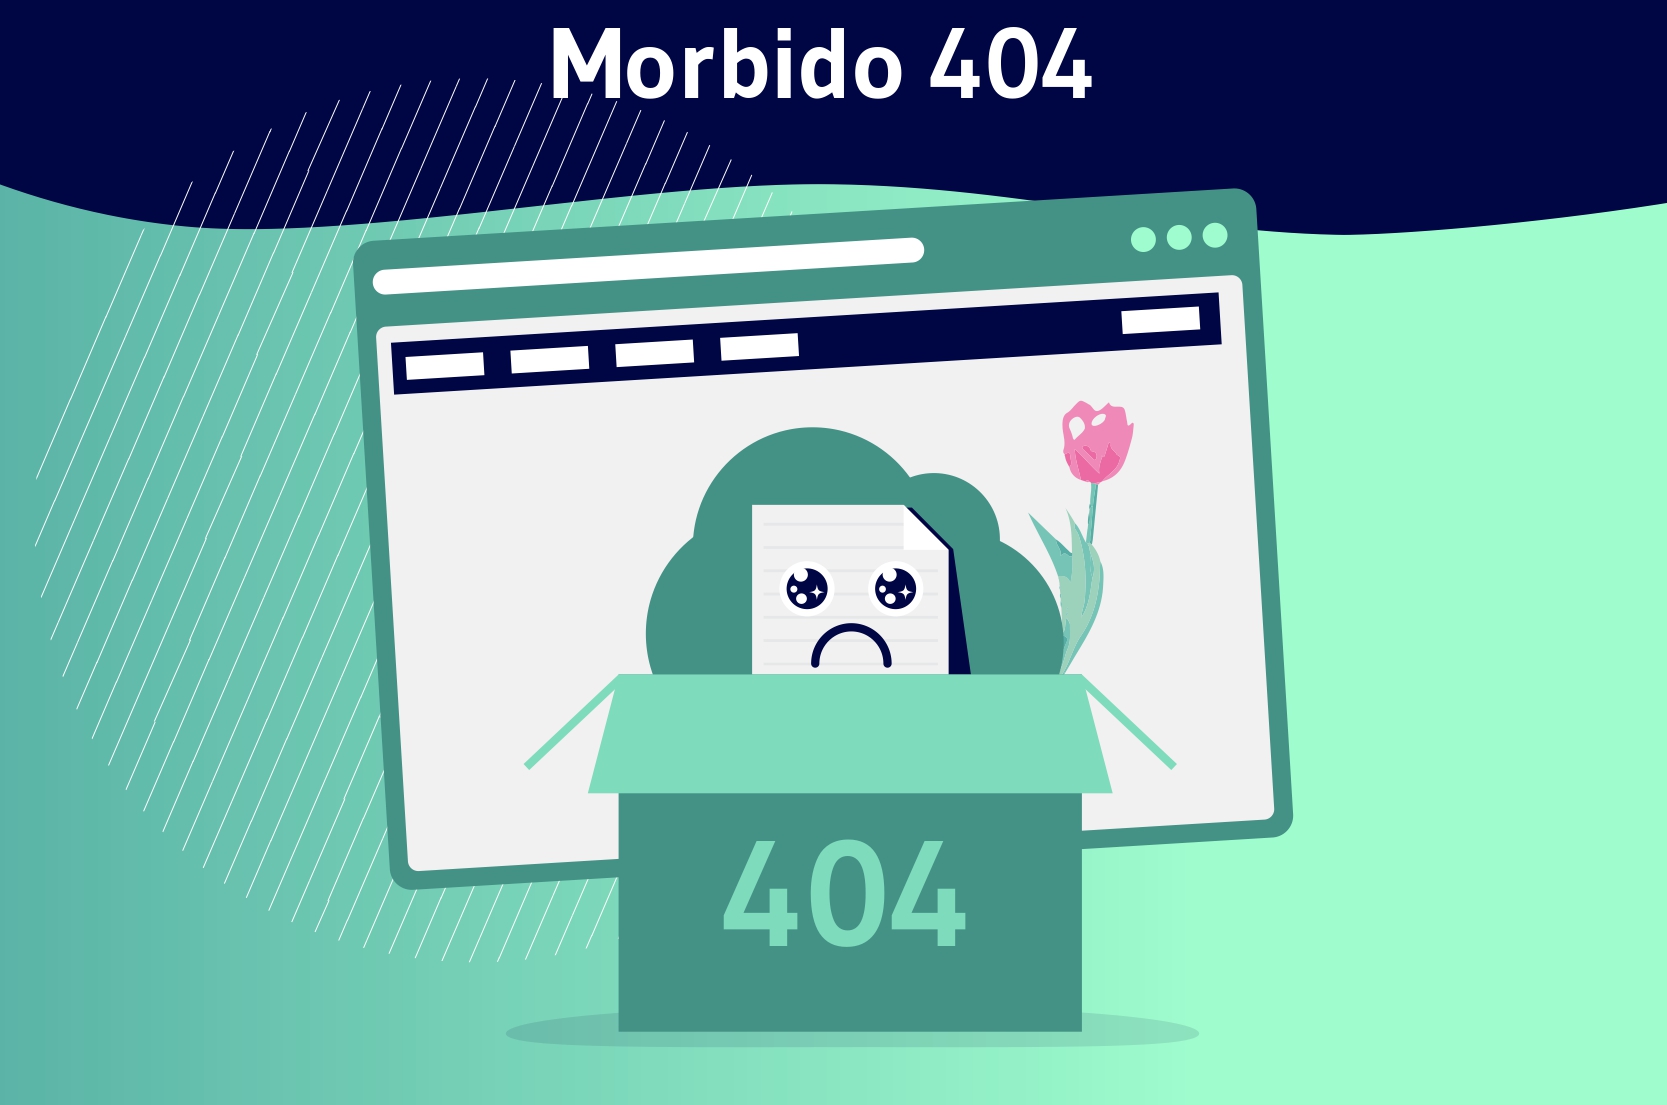 Morbido 404